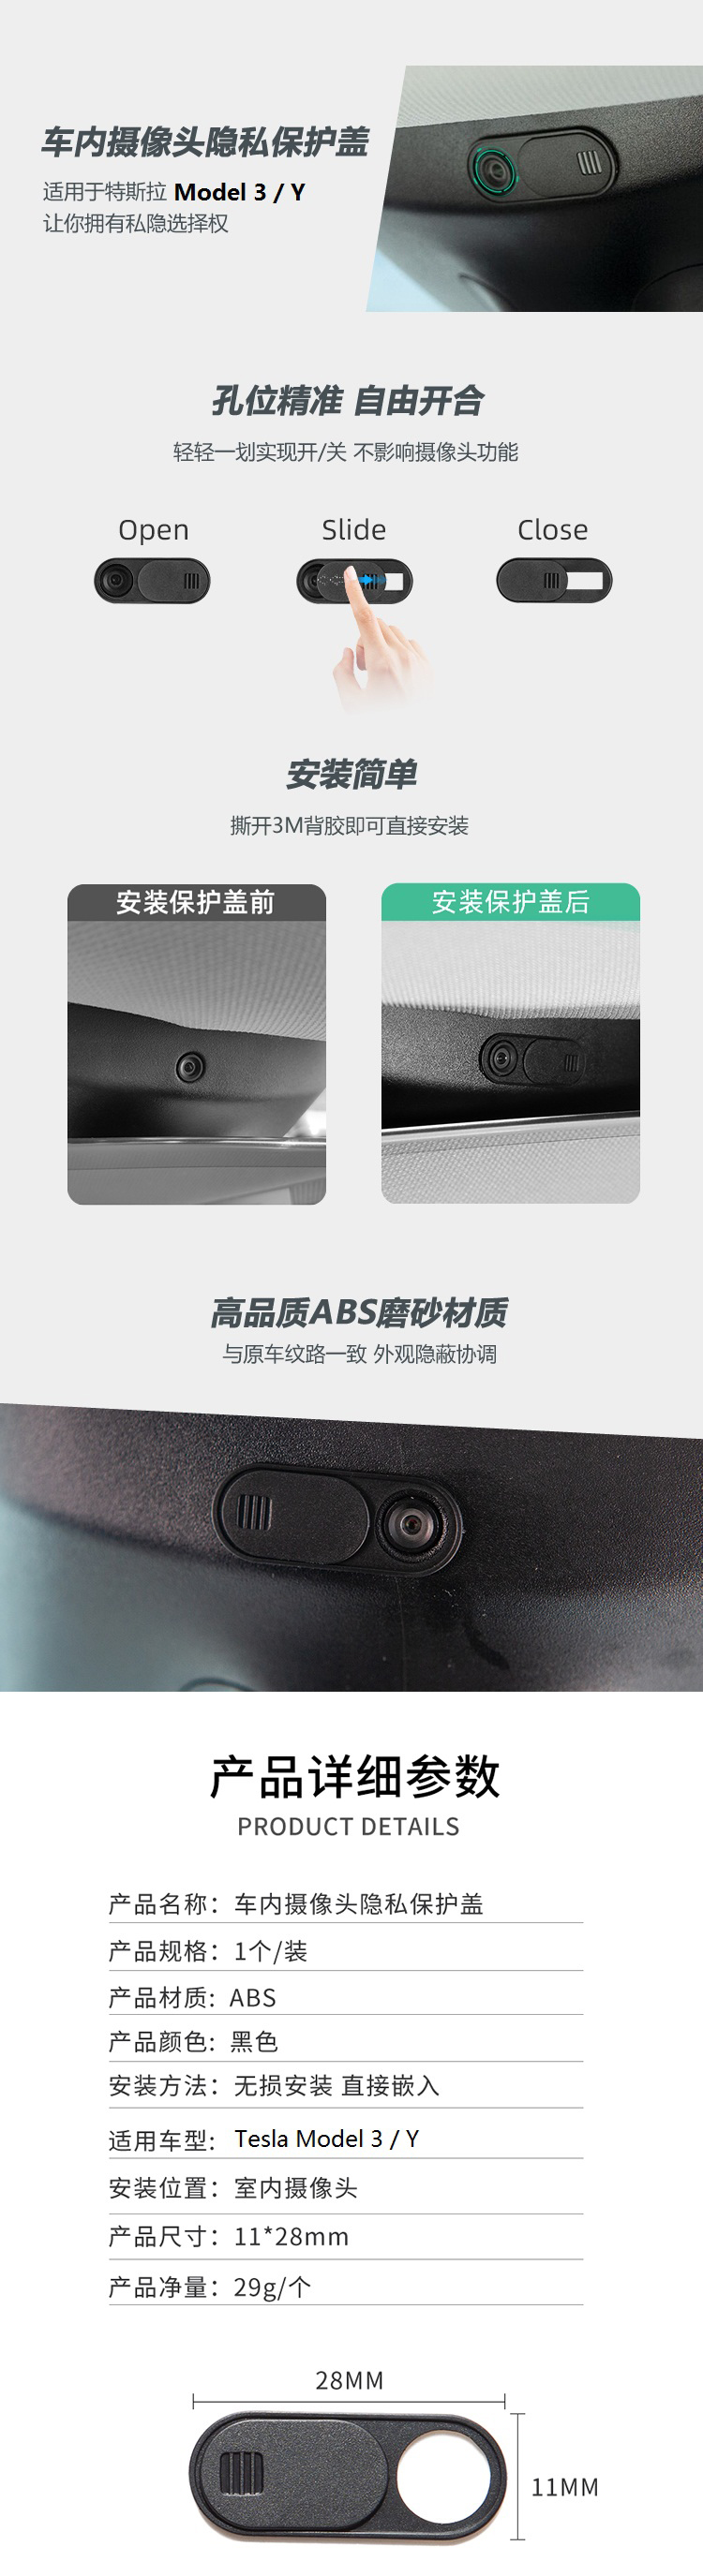 特斯拉Model 3/Y驾驶室内摄像头保护隐私盖